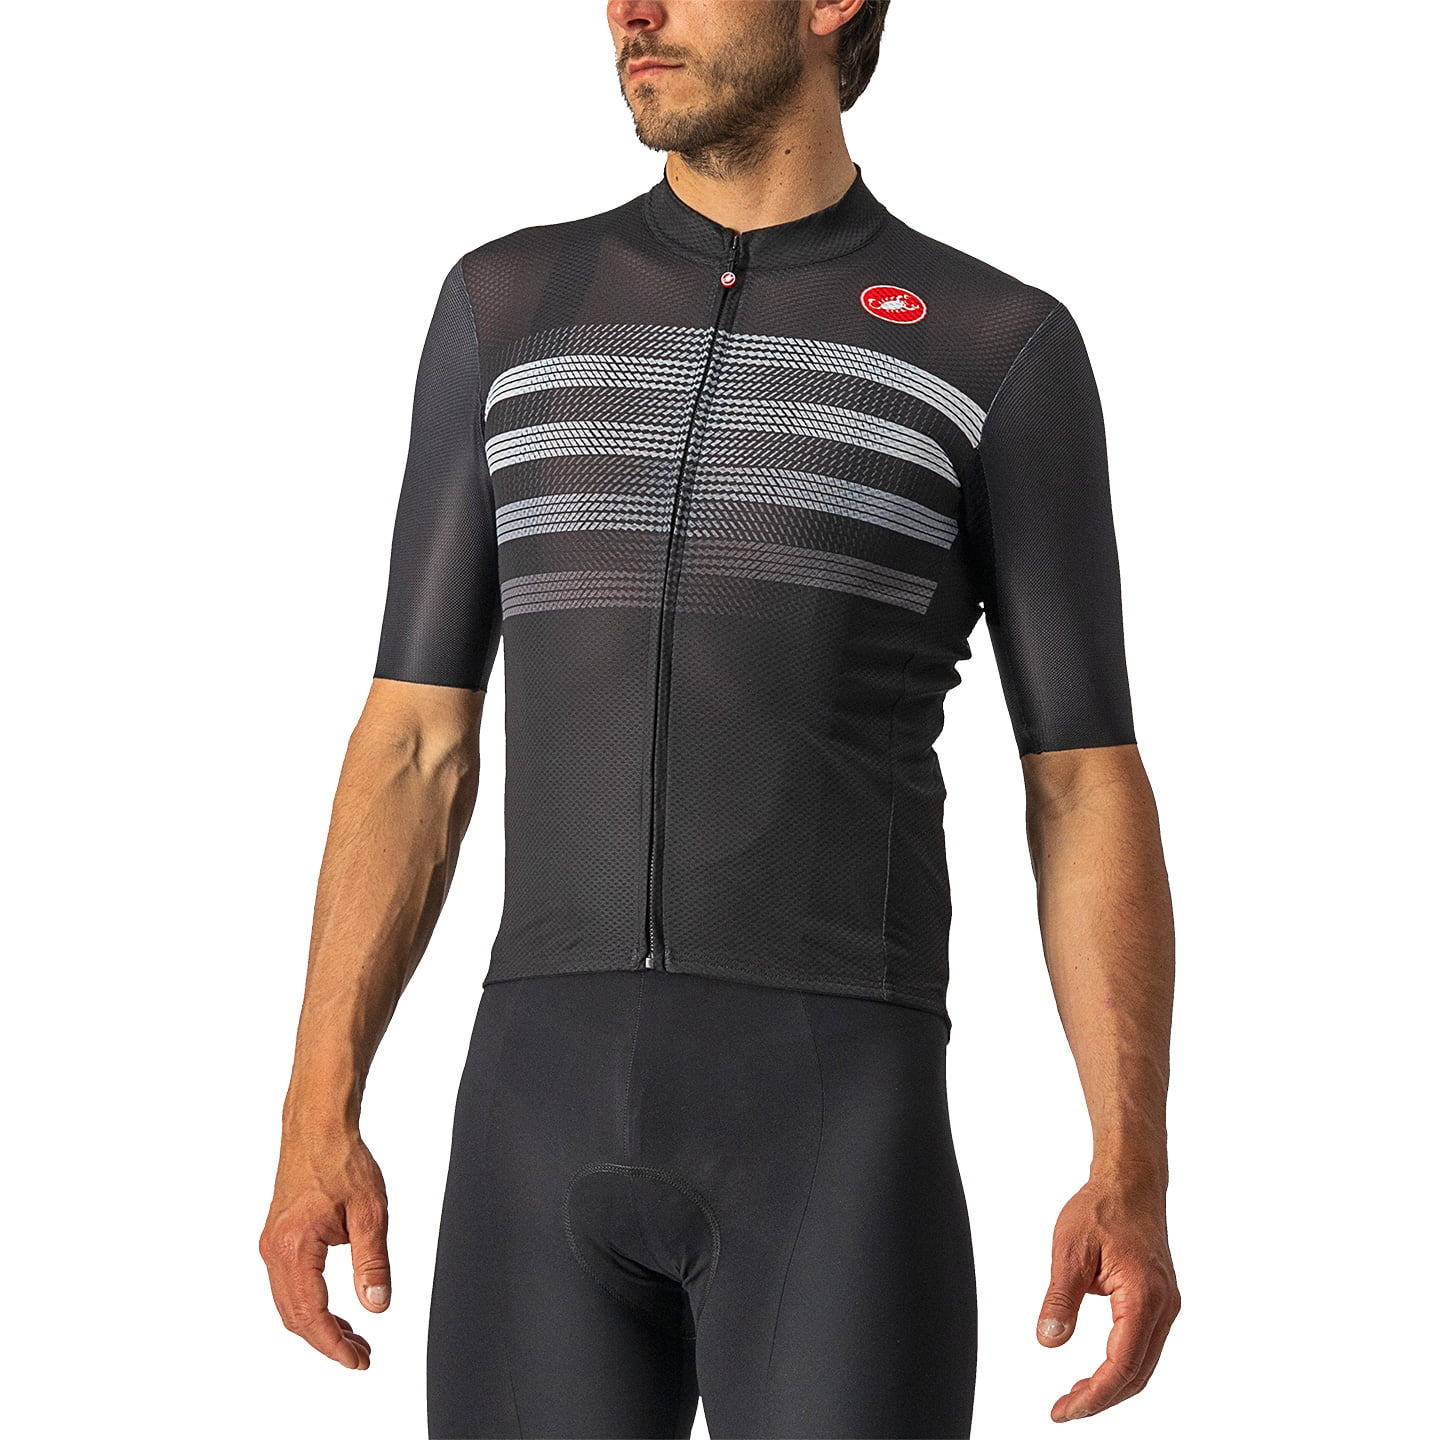 CASTELLI Endurance Pro Short Sleeve Jersey Short Sleeve Jersey, for men, size S, Cycling jersey, Cycling clothing